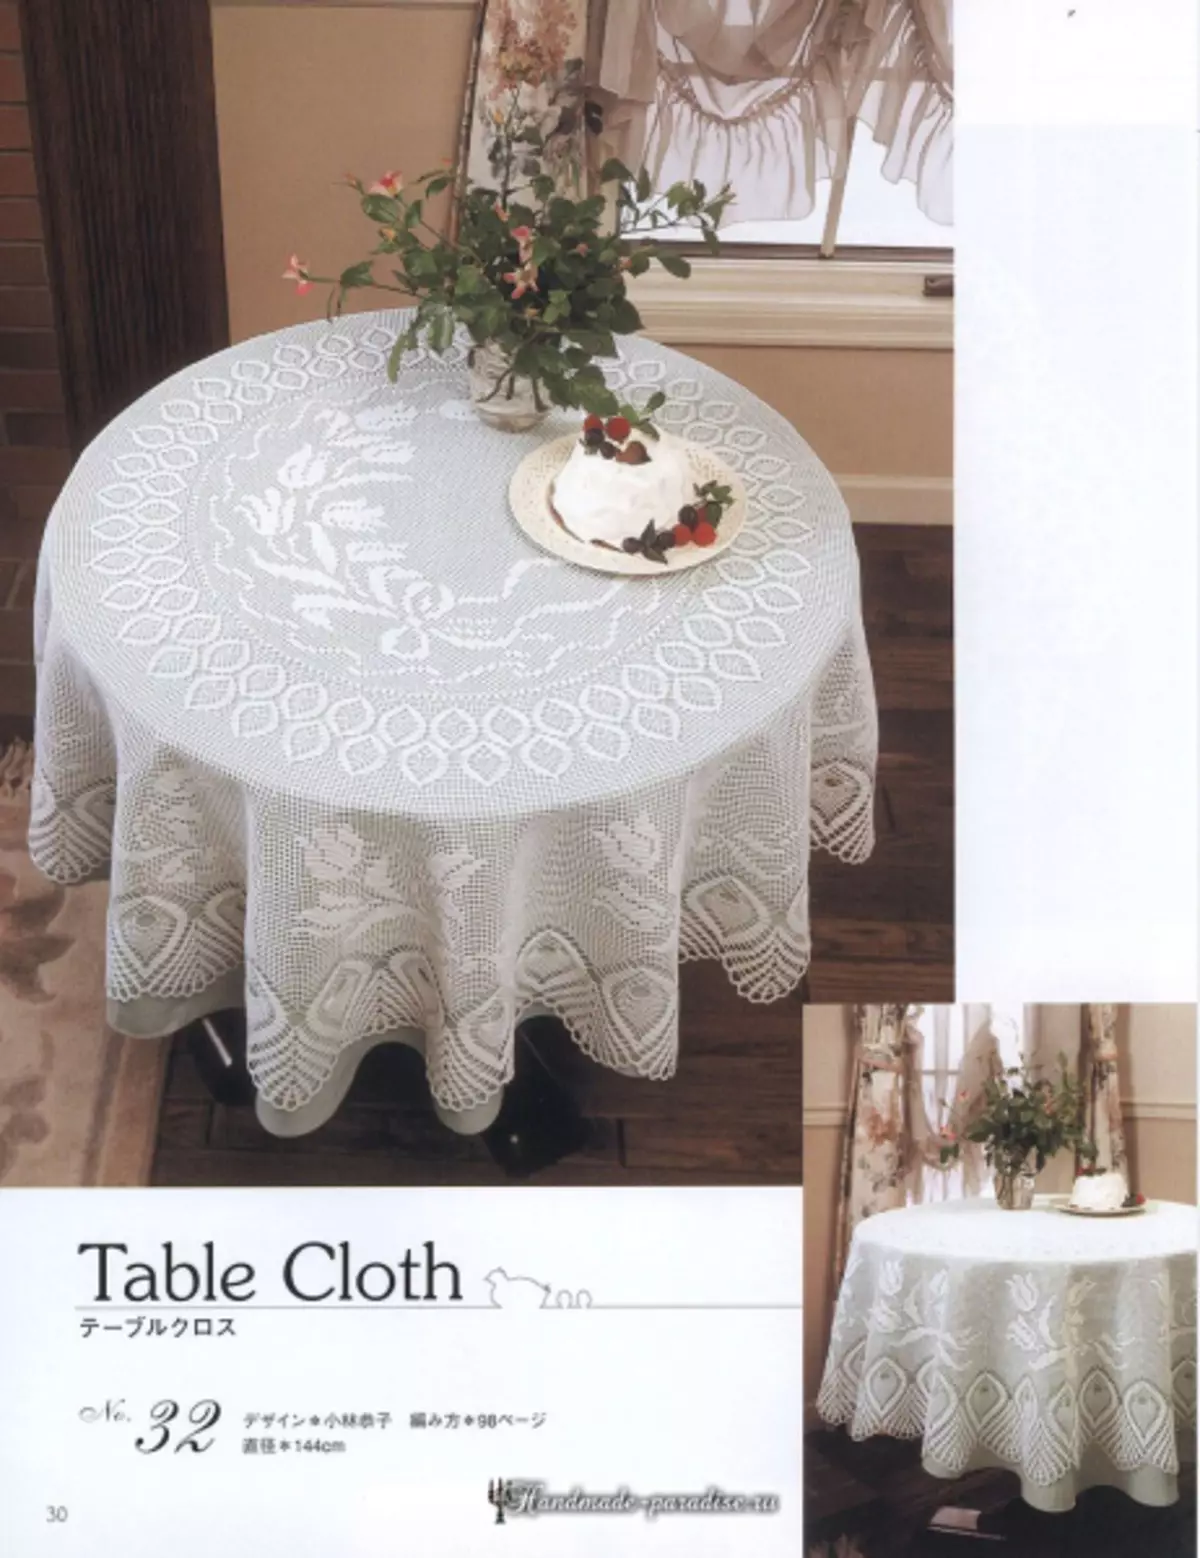 Elegant Crochet Lace 2019 Magazine - servetten en haak tafelkleden